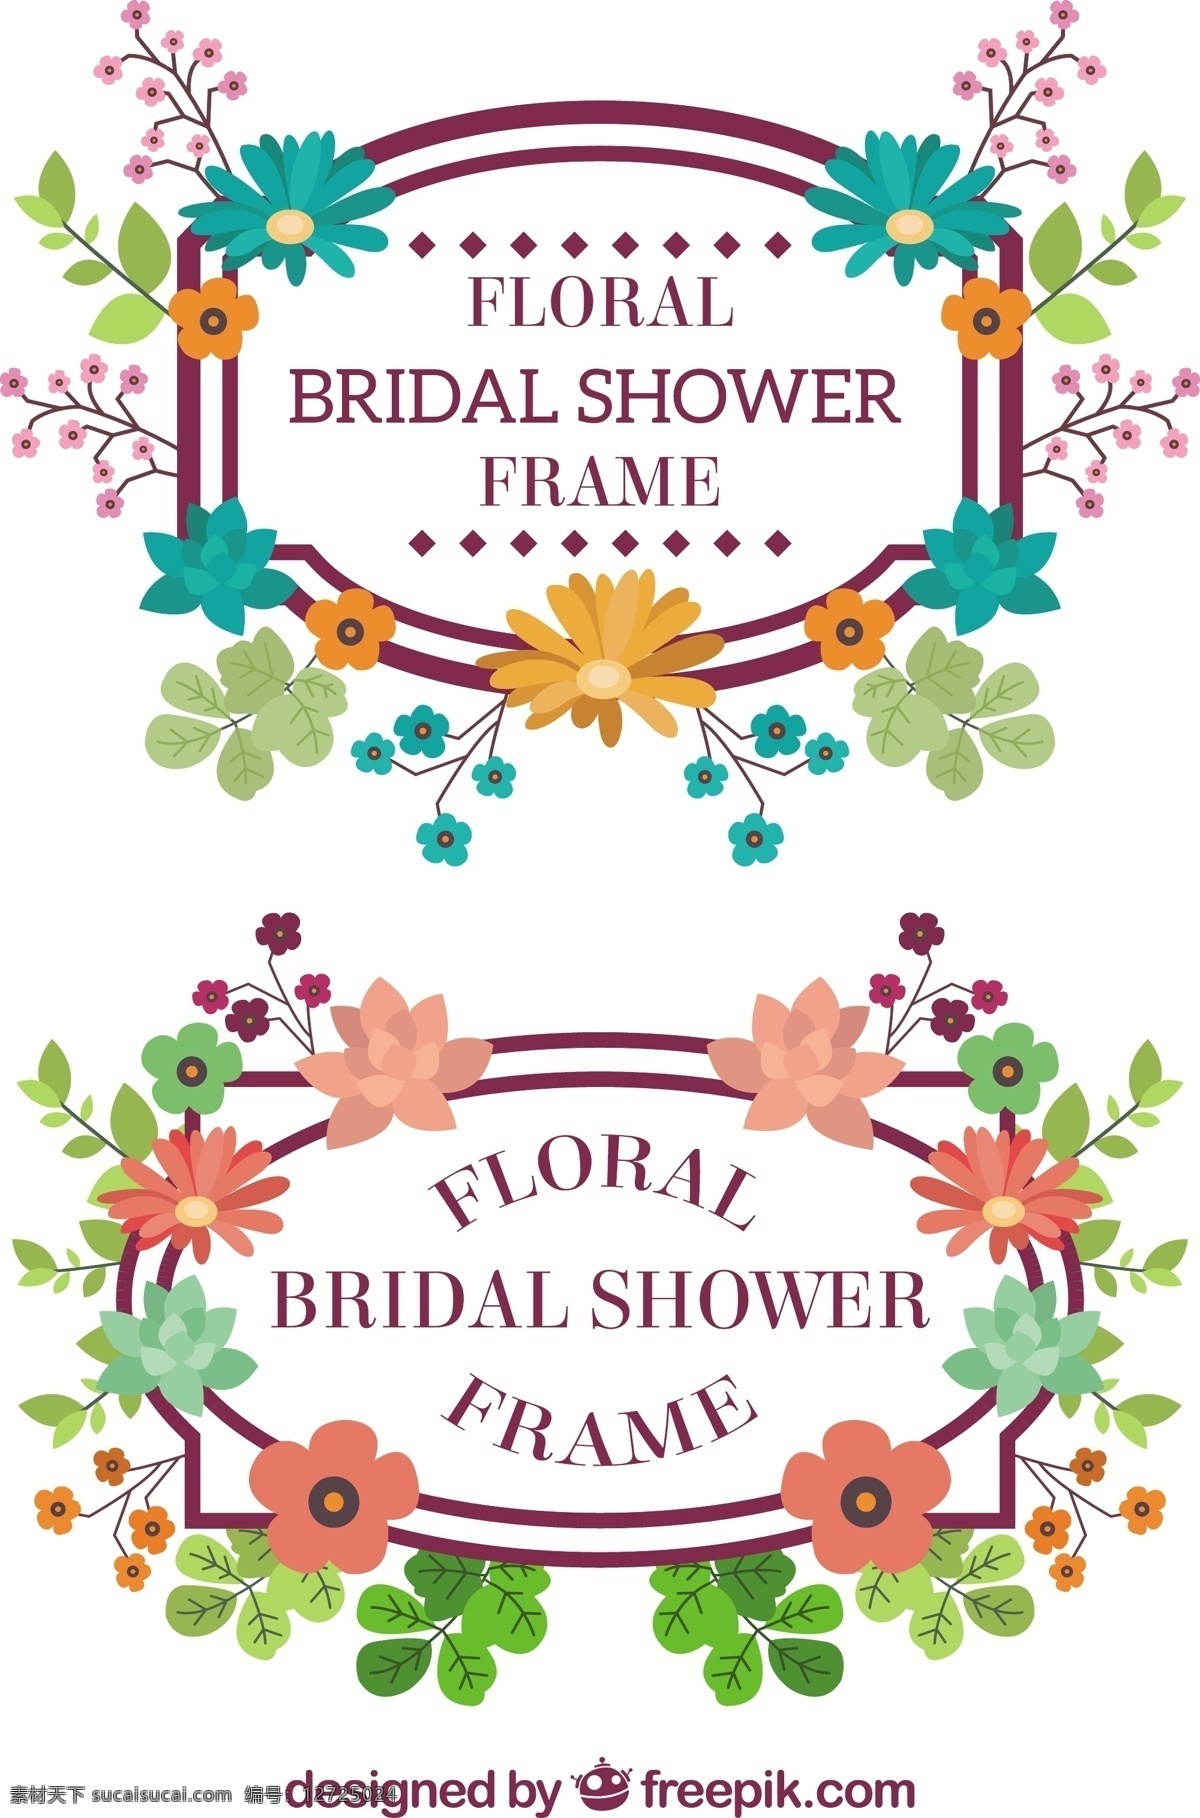 手绘 彩色 花朵 美妙 婚礼 边框 花边 矢量 彩色的花朵 美妙的婚礼 边框花边 矢量素材